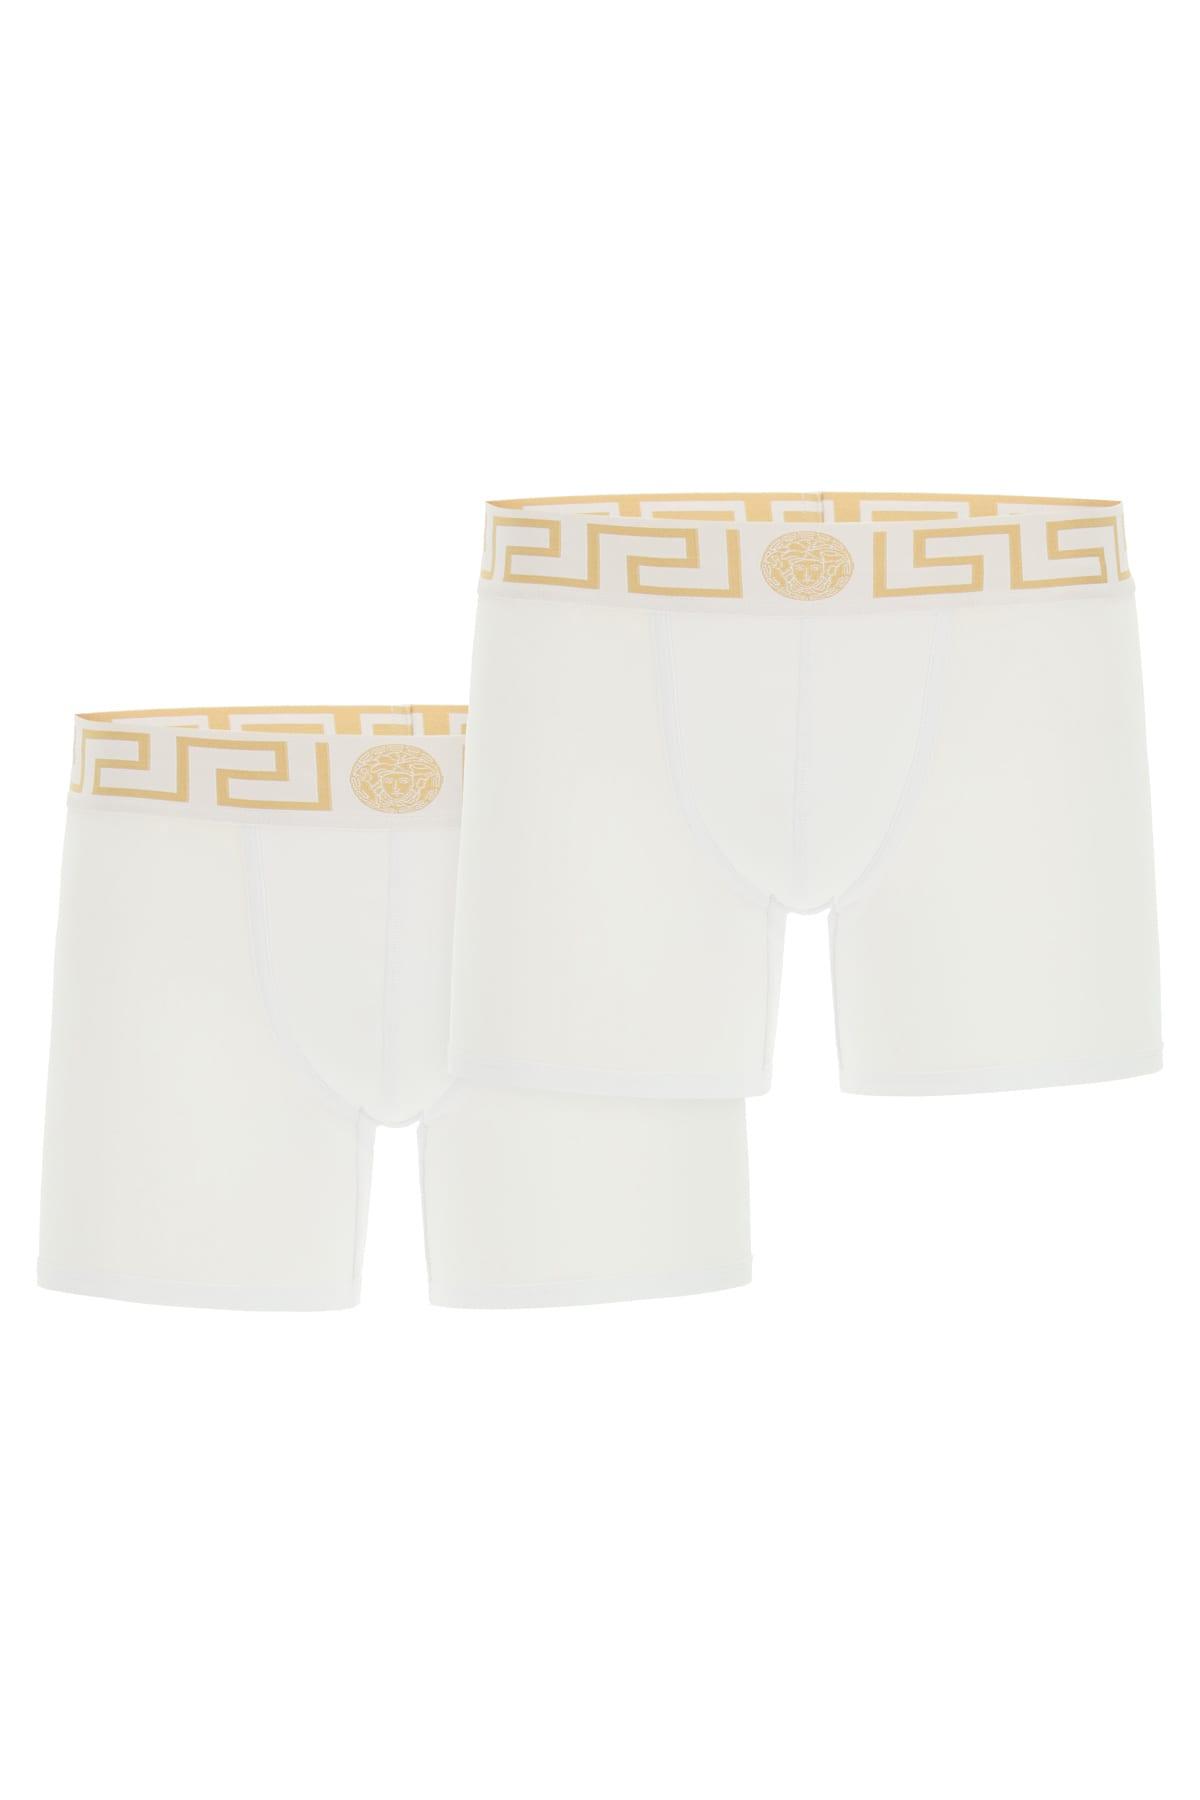 Versace Bi-pack Underwear Greca Border Trunks in White for Men